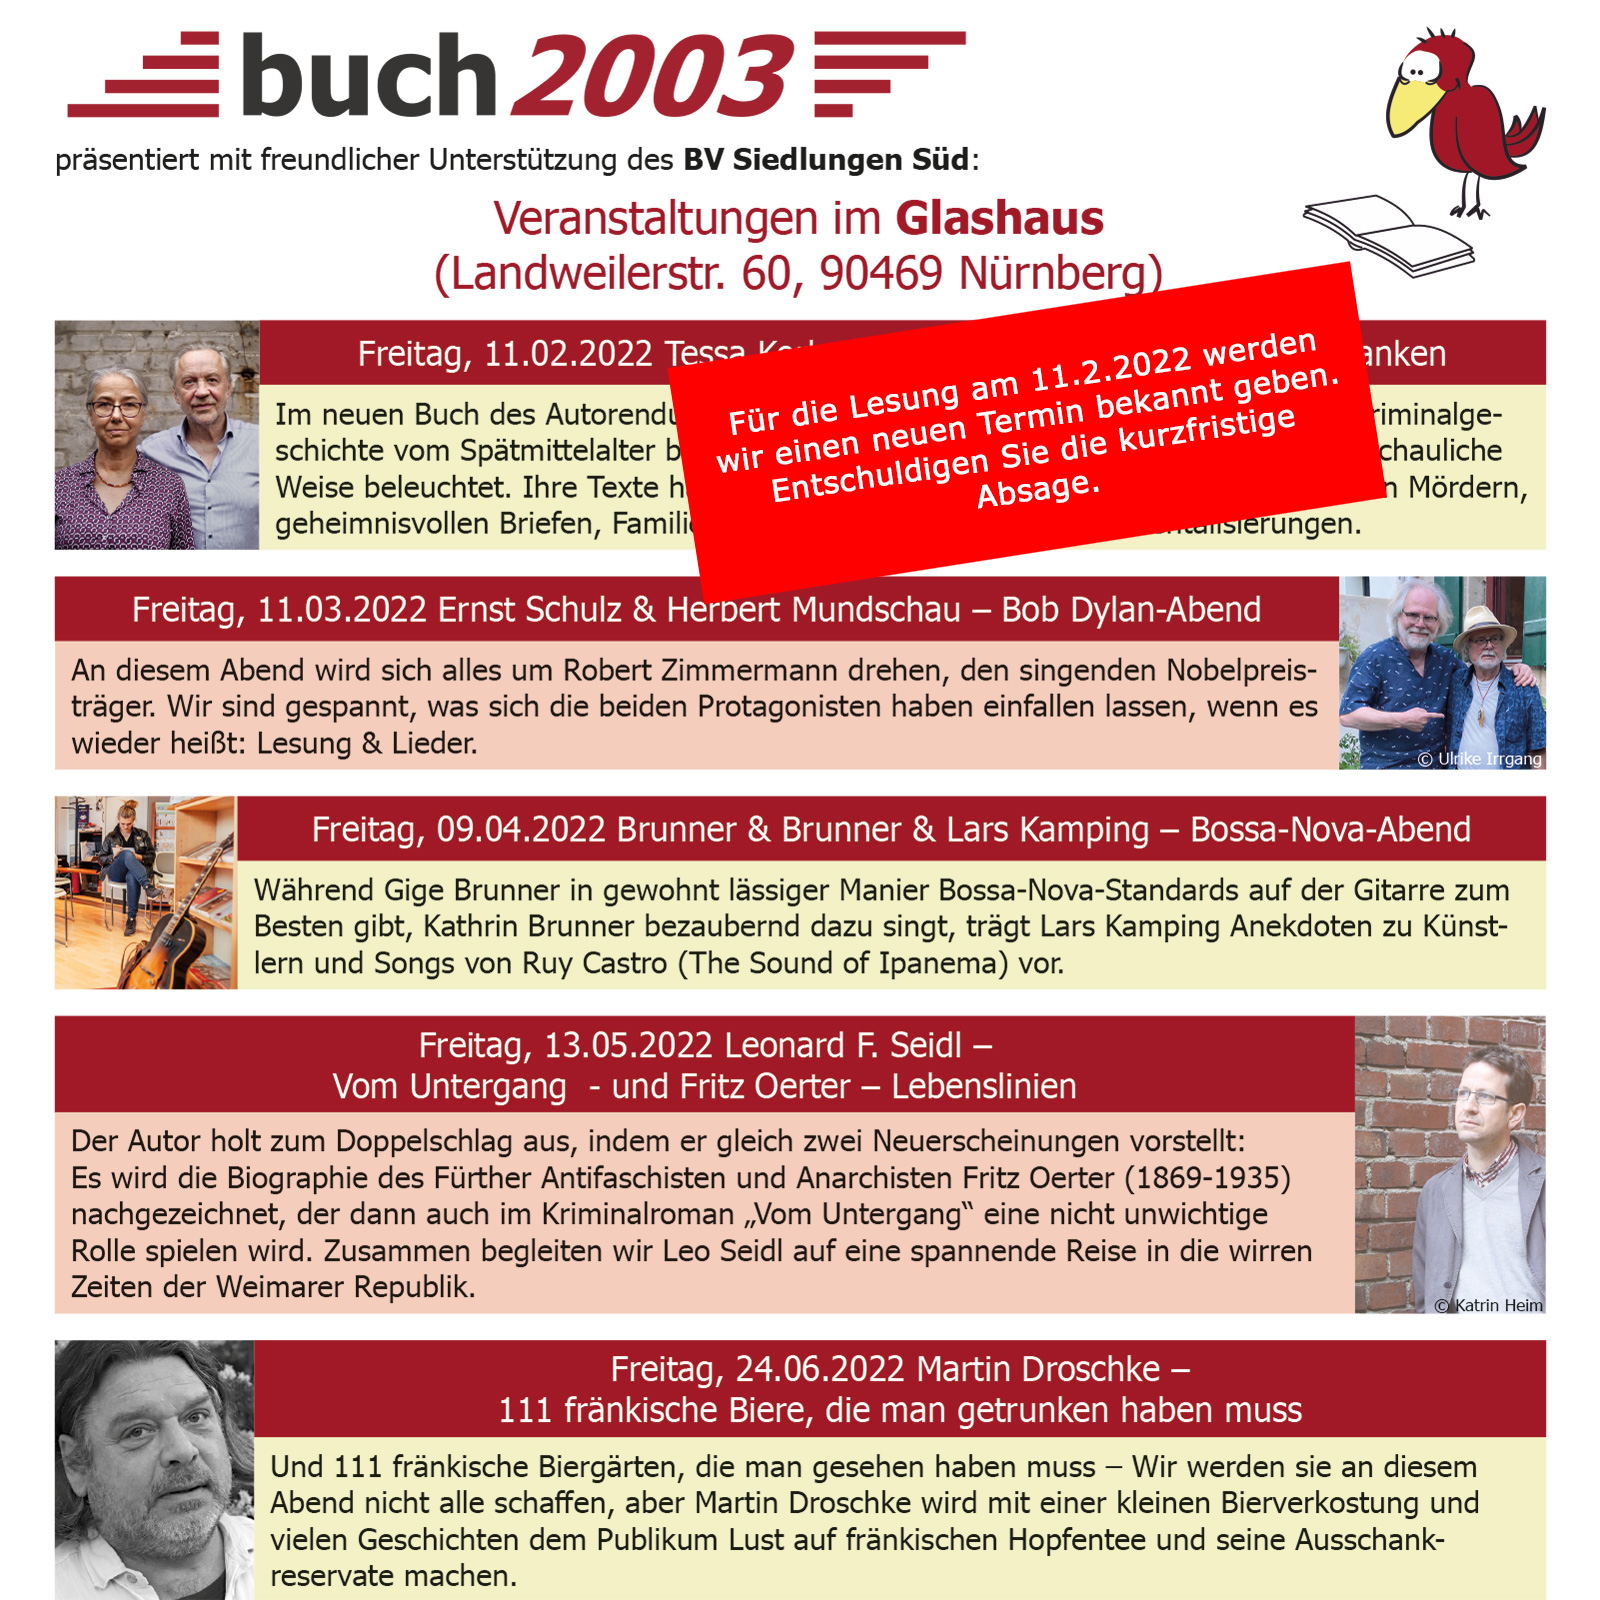 Veranstaltungsreihe buch 2003 präsentiert mit freundlicher unterstützung des BV Siedlungen Süd